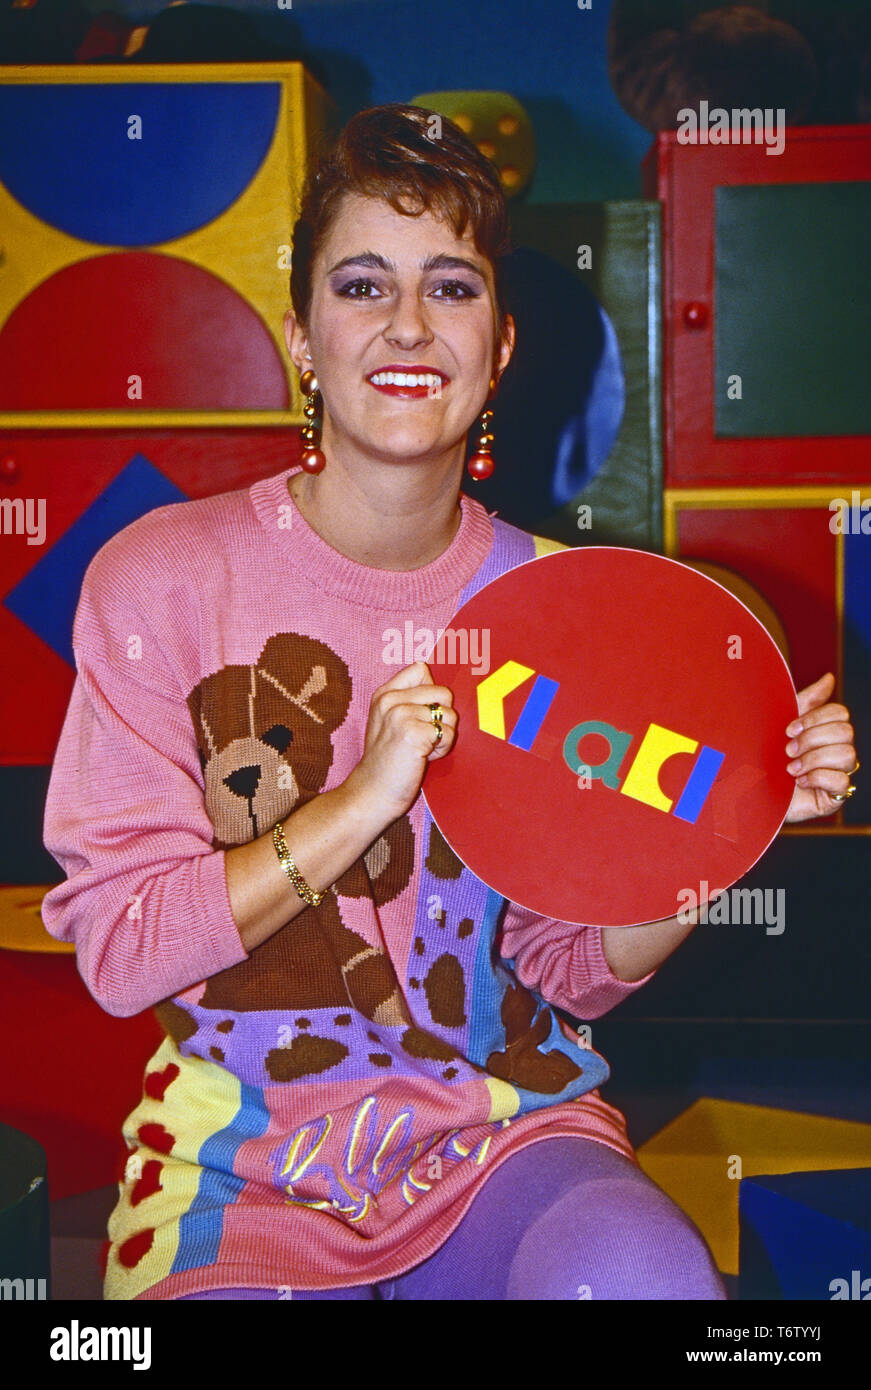 Nicole Bierhoff, deutsche Moderatorin der Kindersendung 'Klack' bei RTL plus in Köln, Deutschland 1992. German TV presenter Nicole Bierhoff at the studio of her children's show 'Klack' at Cologne, Germany 1992. Stock Photo